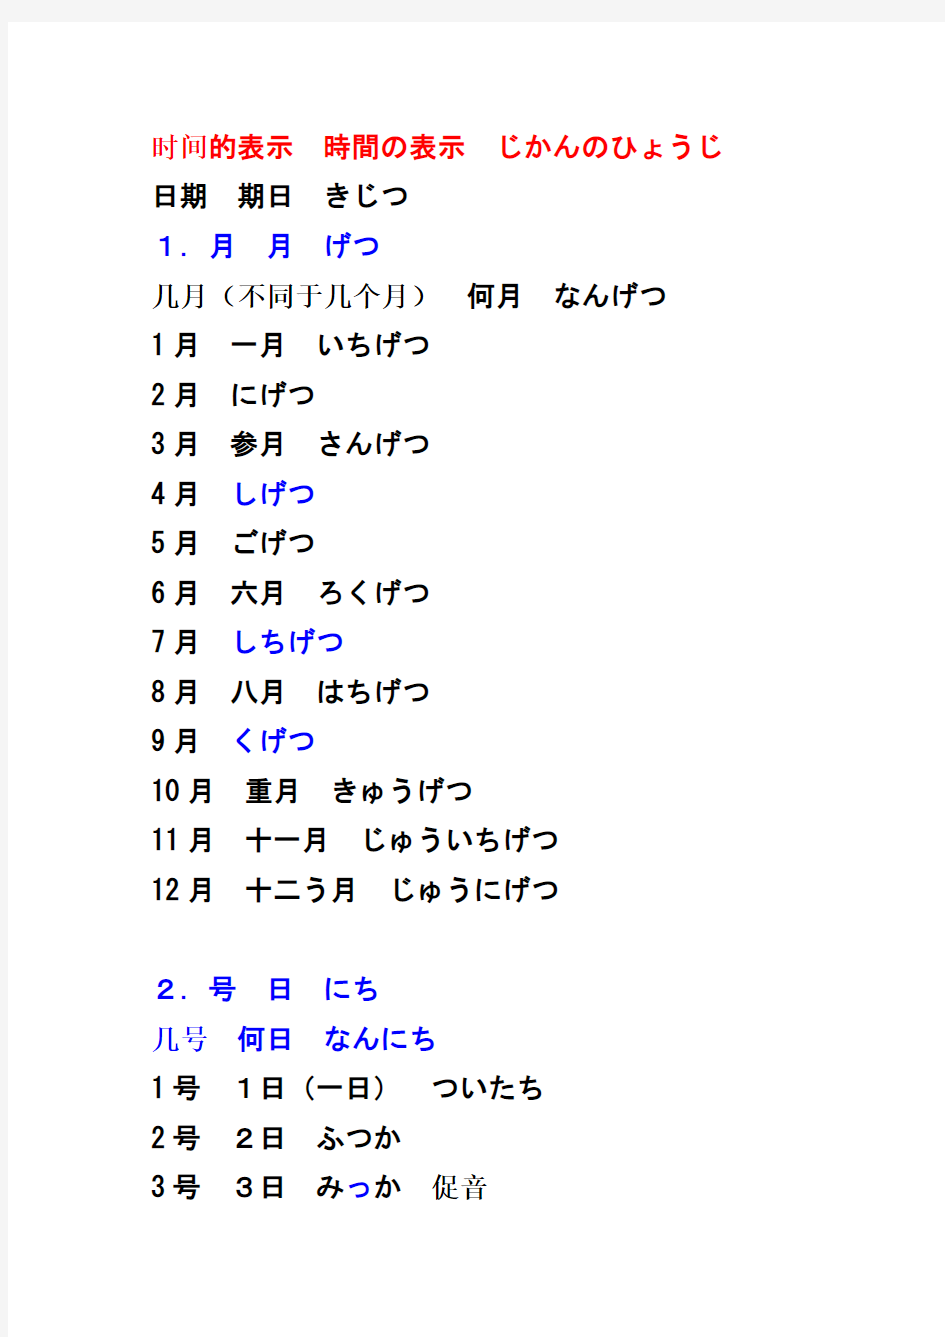 日语中时间的表示-日期(几月几号)